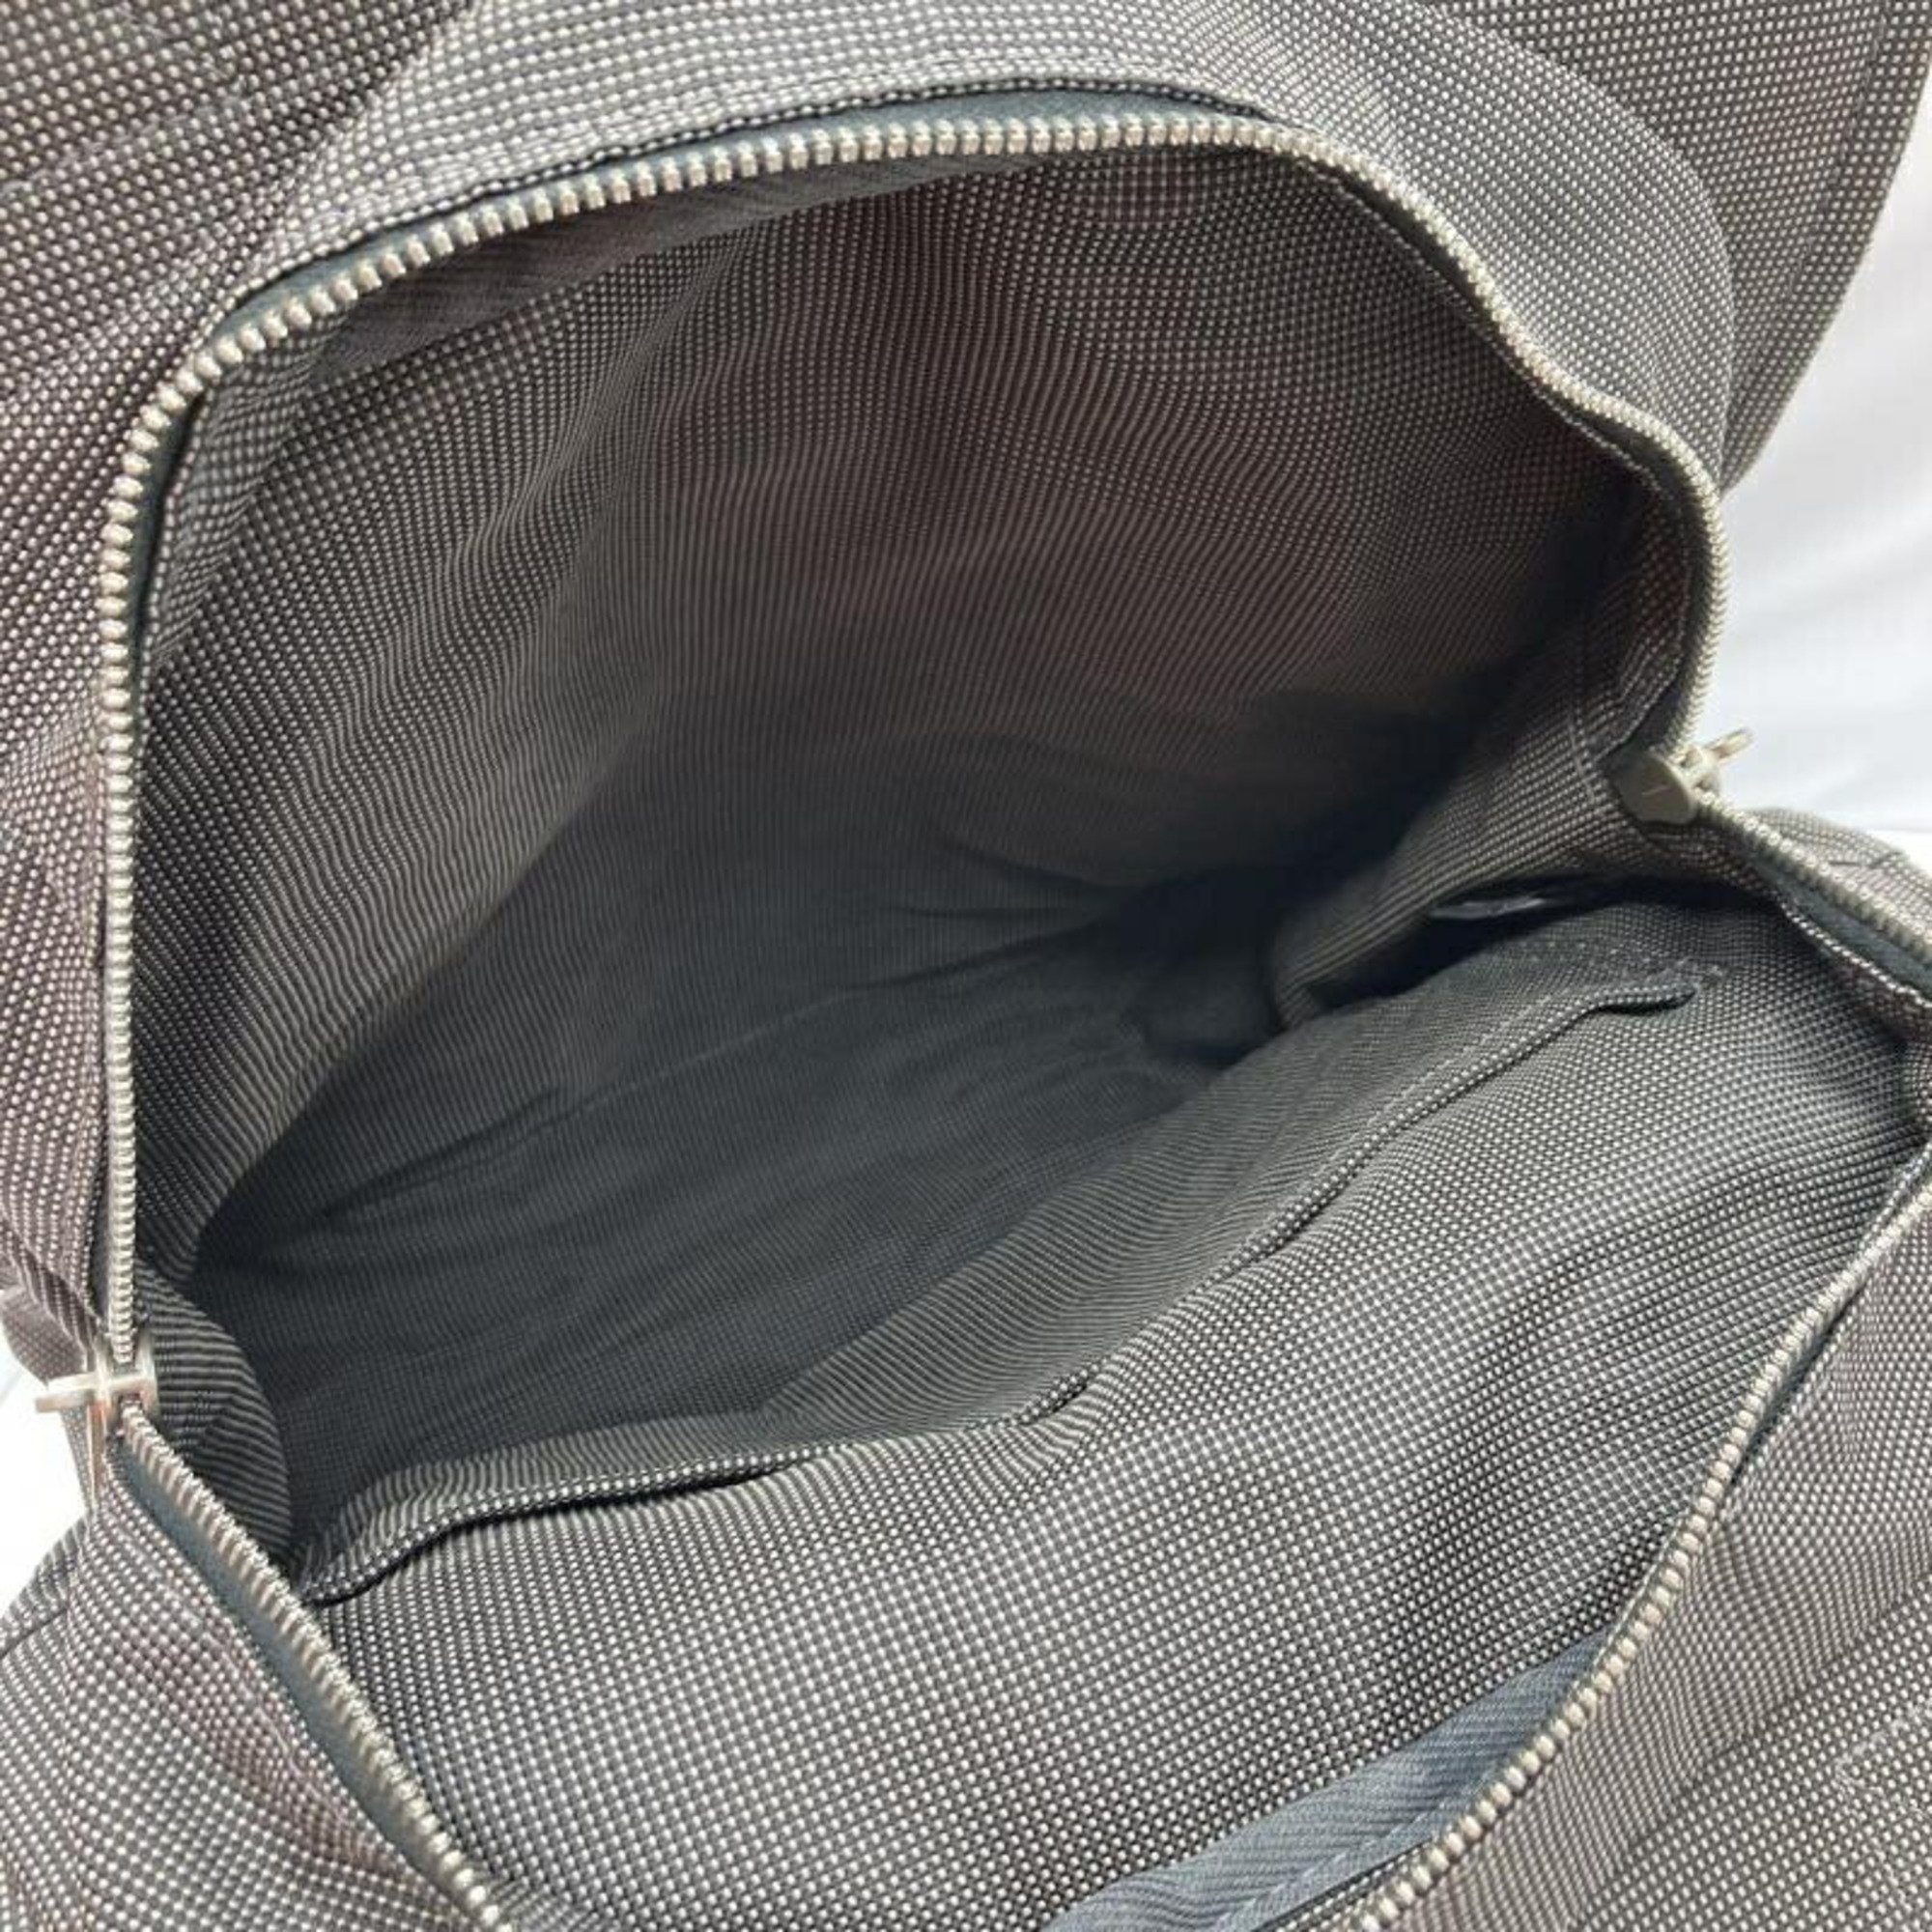 HERMES Air Line Ad MM Backpack Hermes Black x Grey Tote Handbag